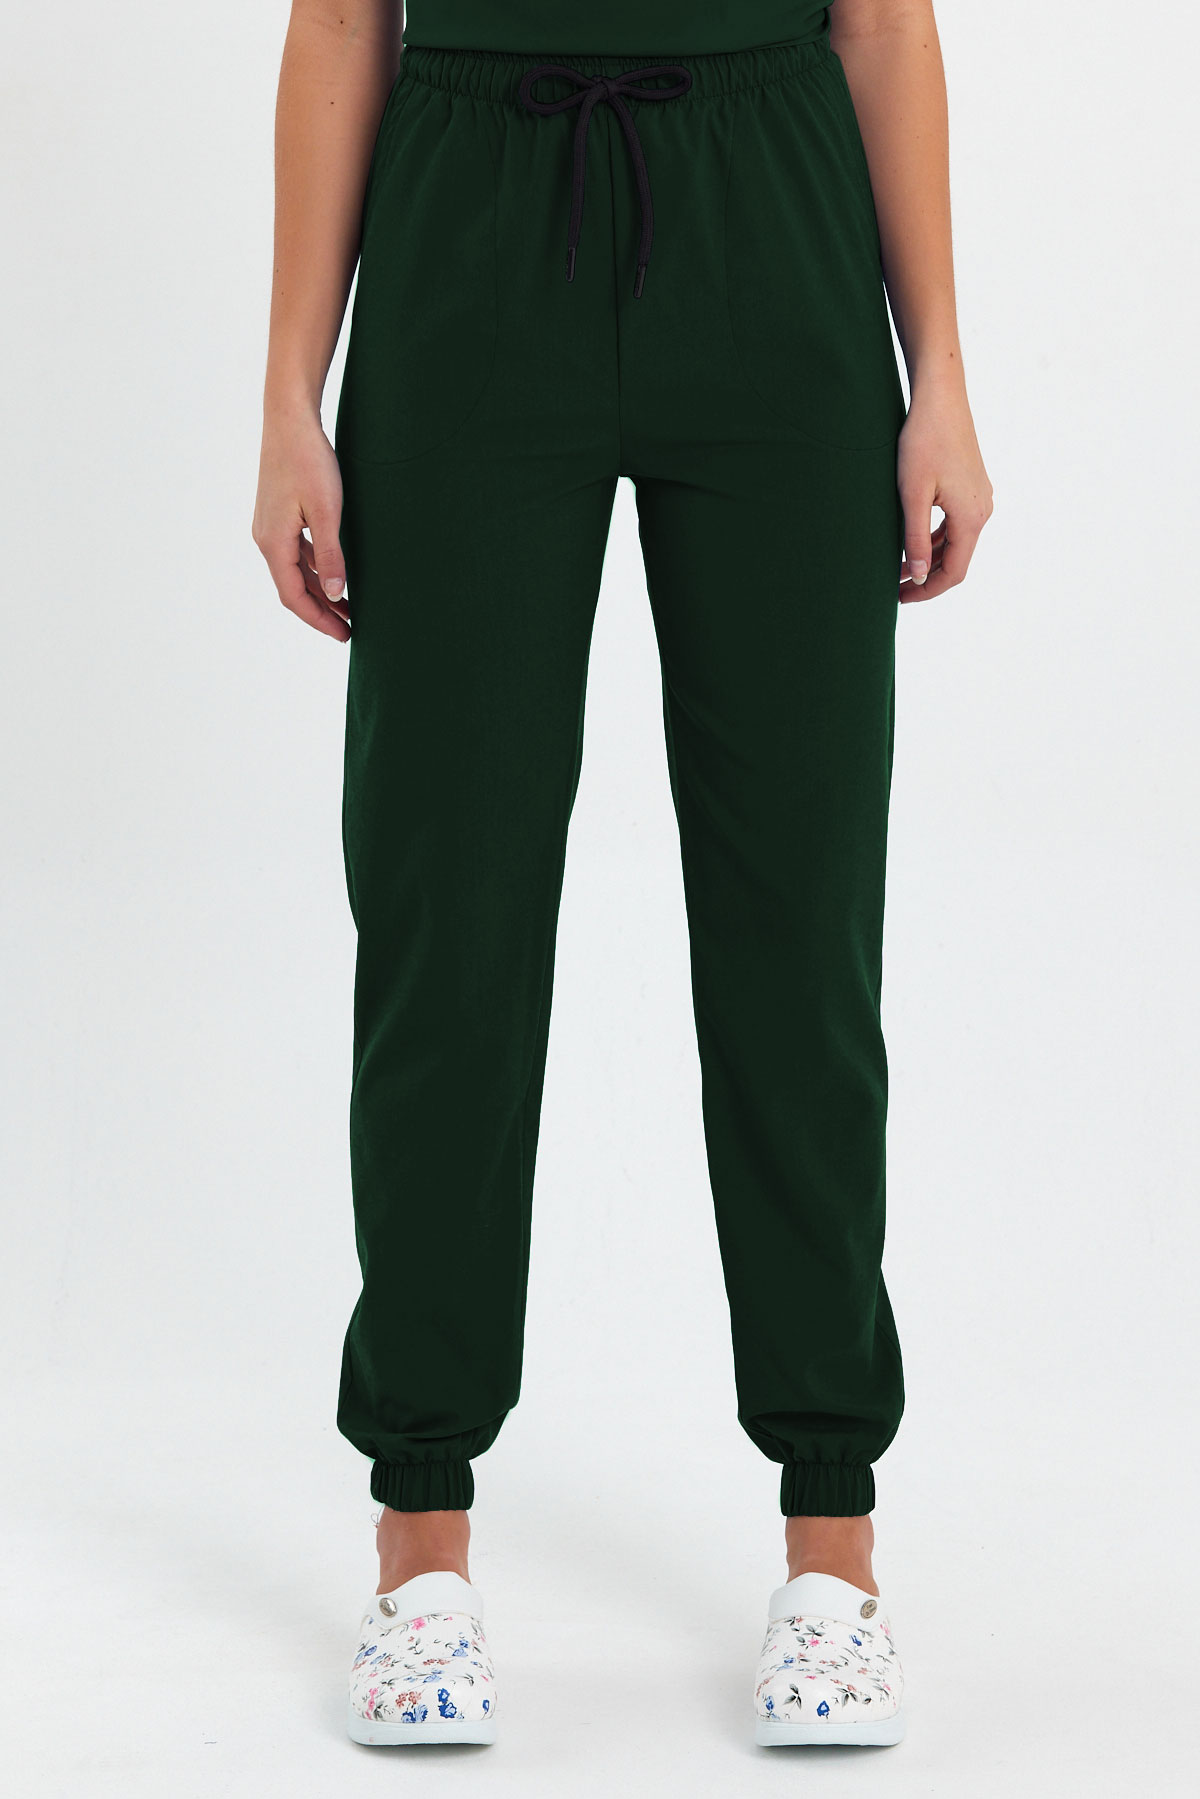 LAME 1010 Basic Likralı Avcı Yeşili Scrubs, Hemşire Forması Lastikli Paça Pantolon